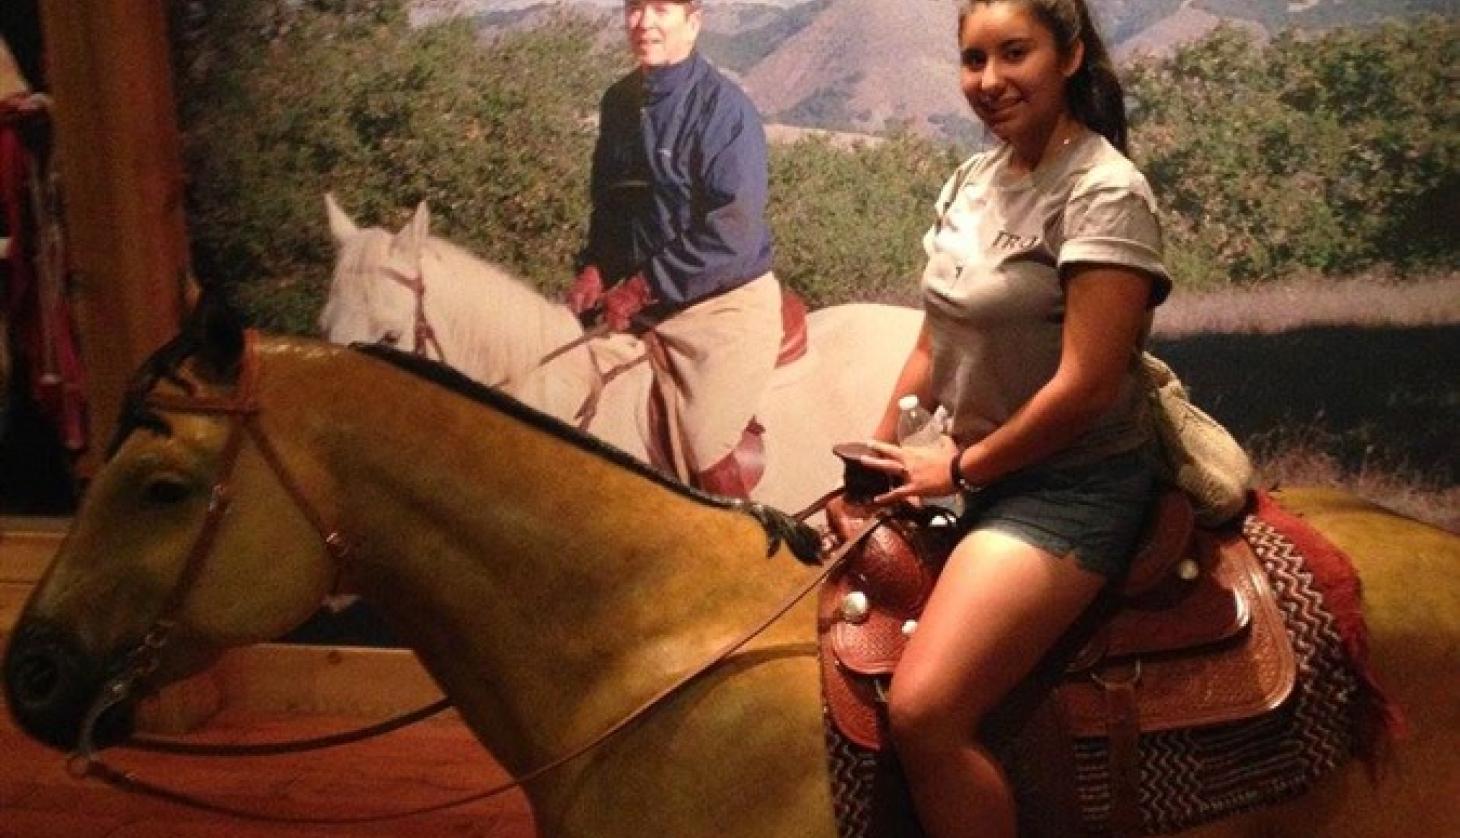 Girl Riding a Fake Horse